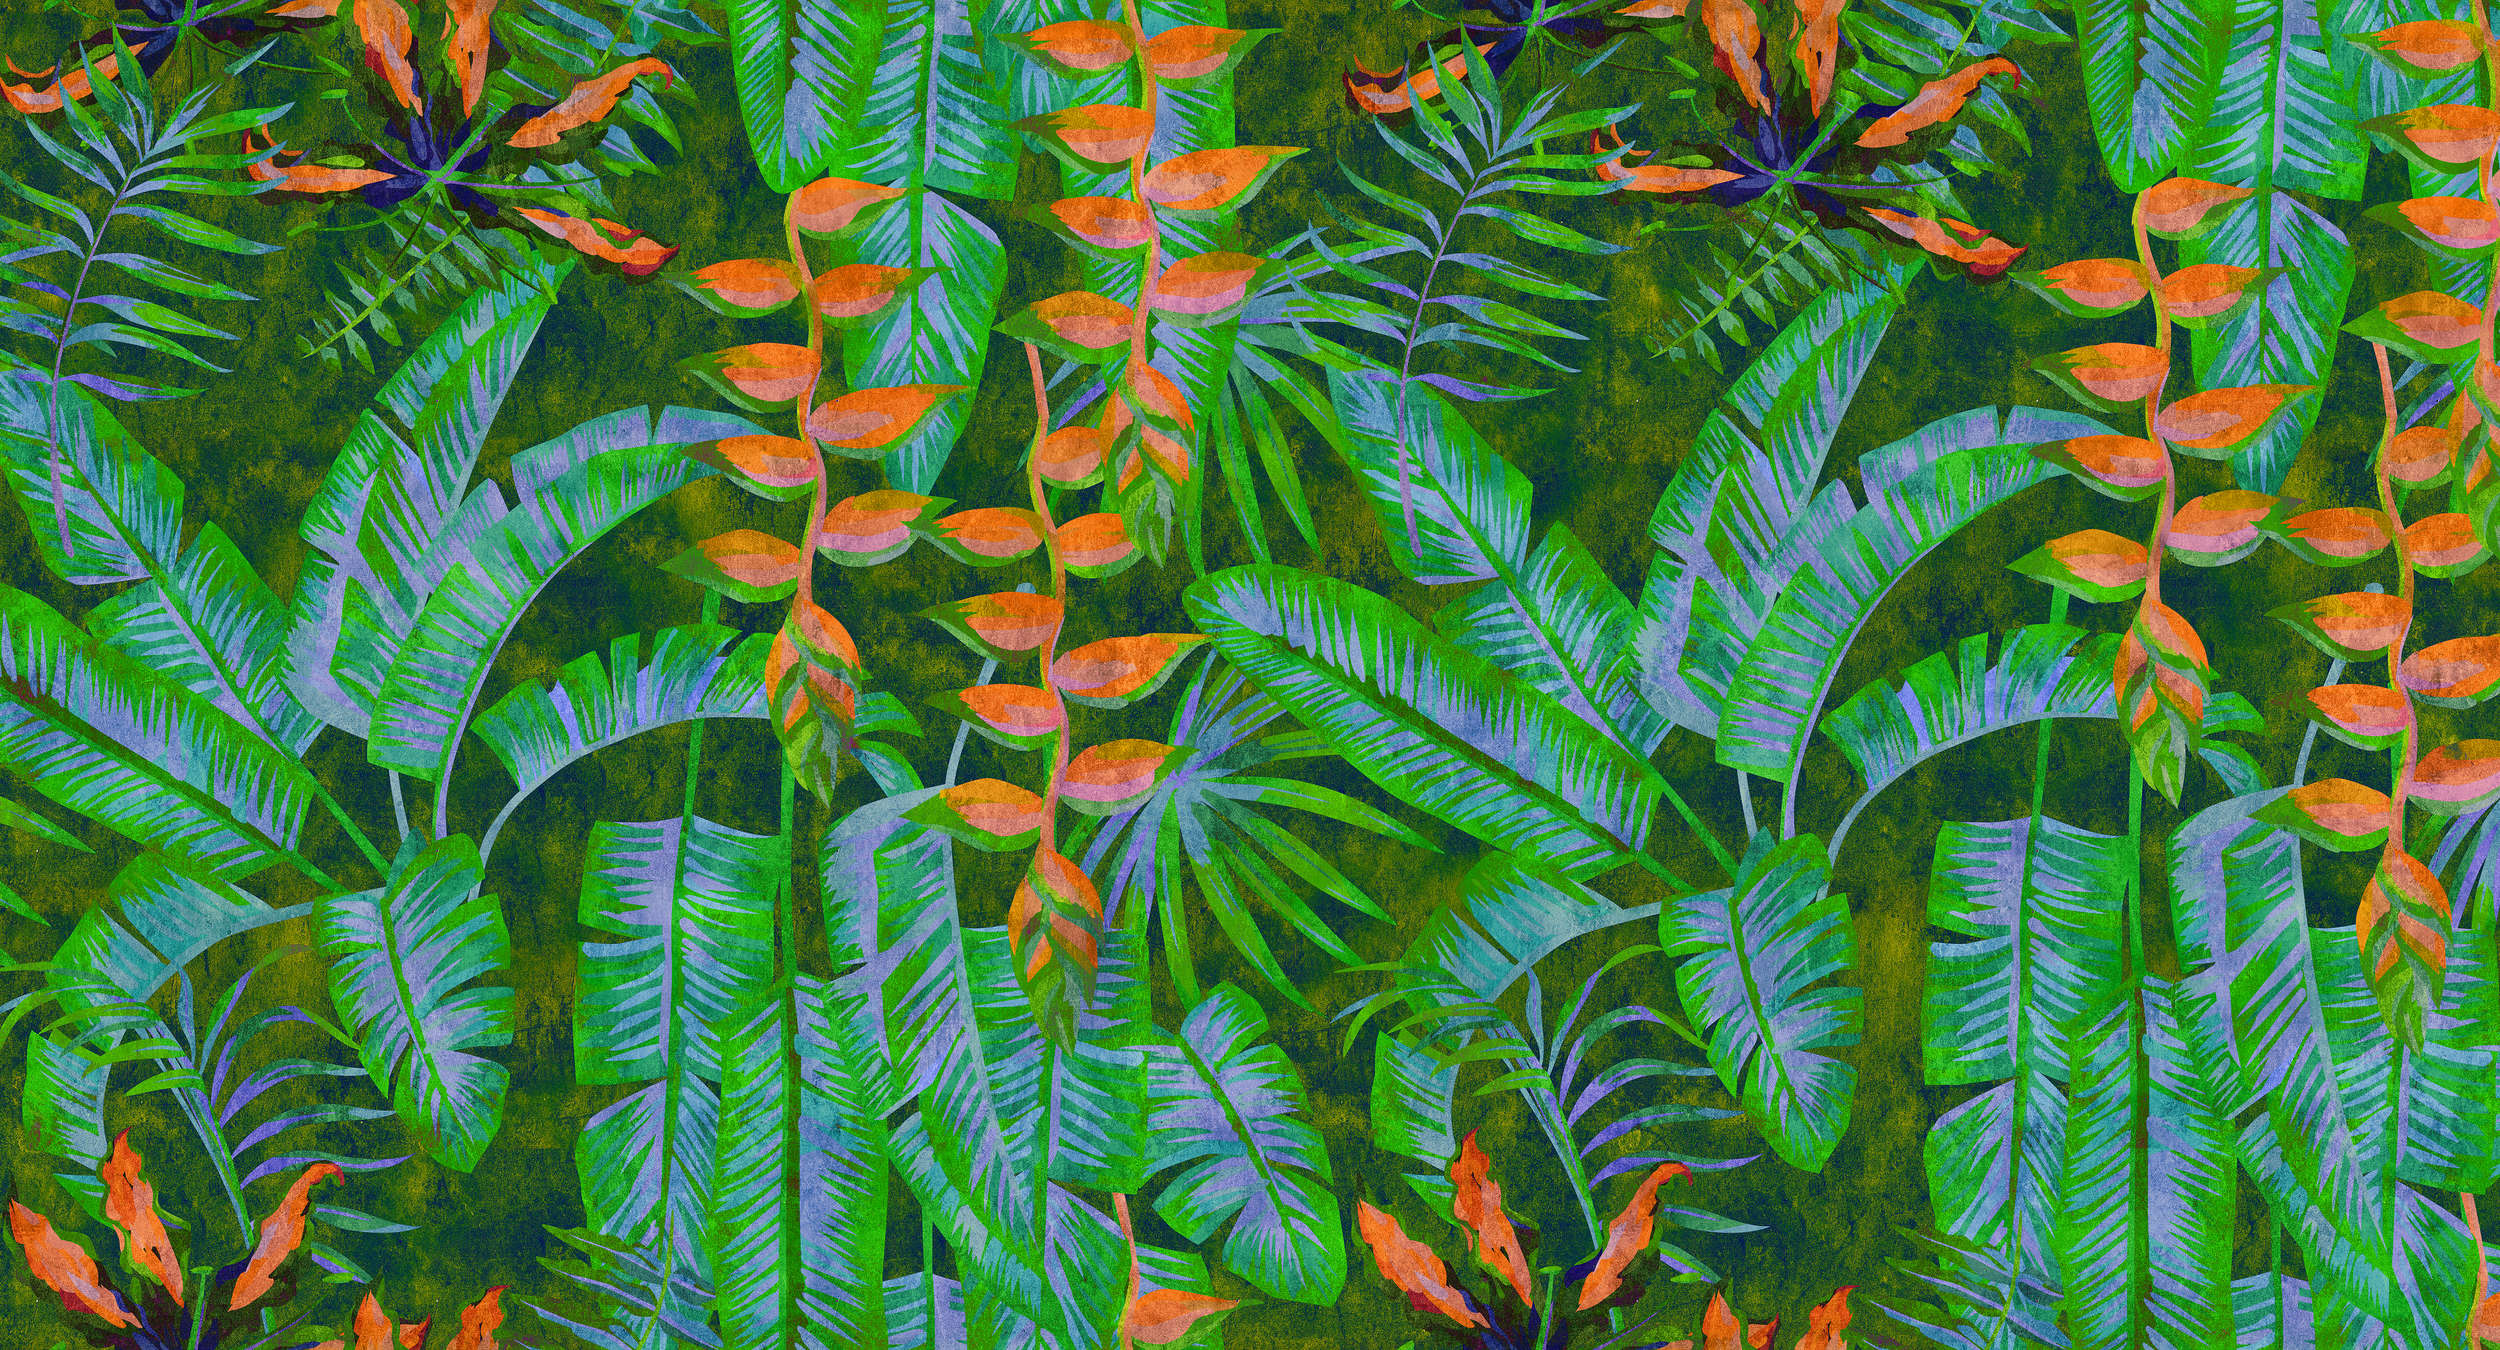             Tropicana 4 - Papier peint jungle aux couleurs vives - À structure buvard - Vert, Orange | Nacré intissé lisse
        